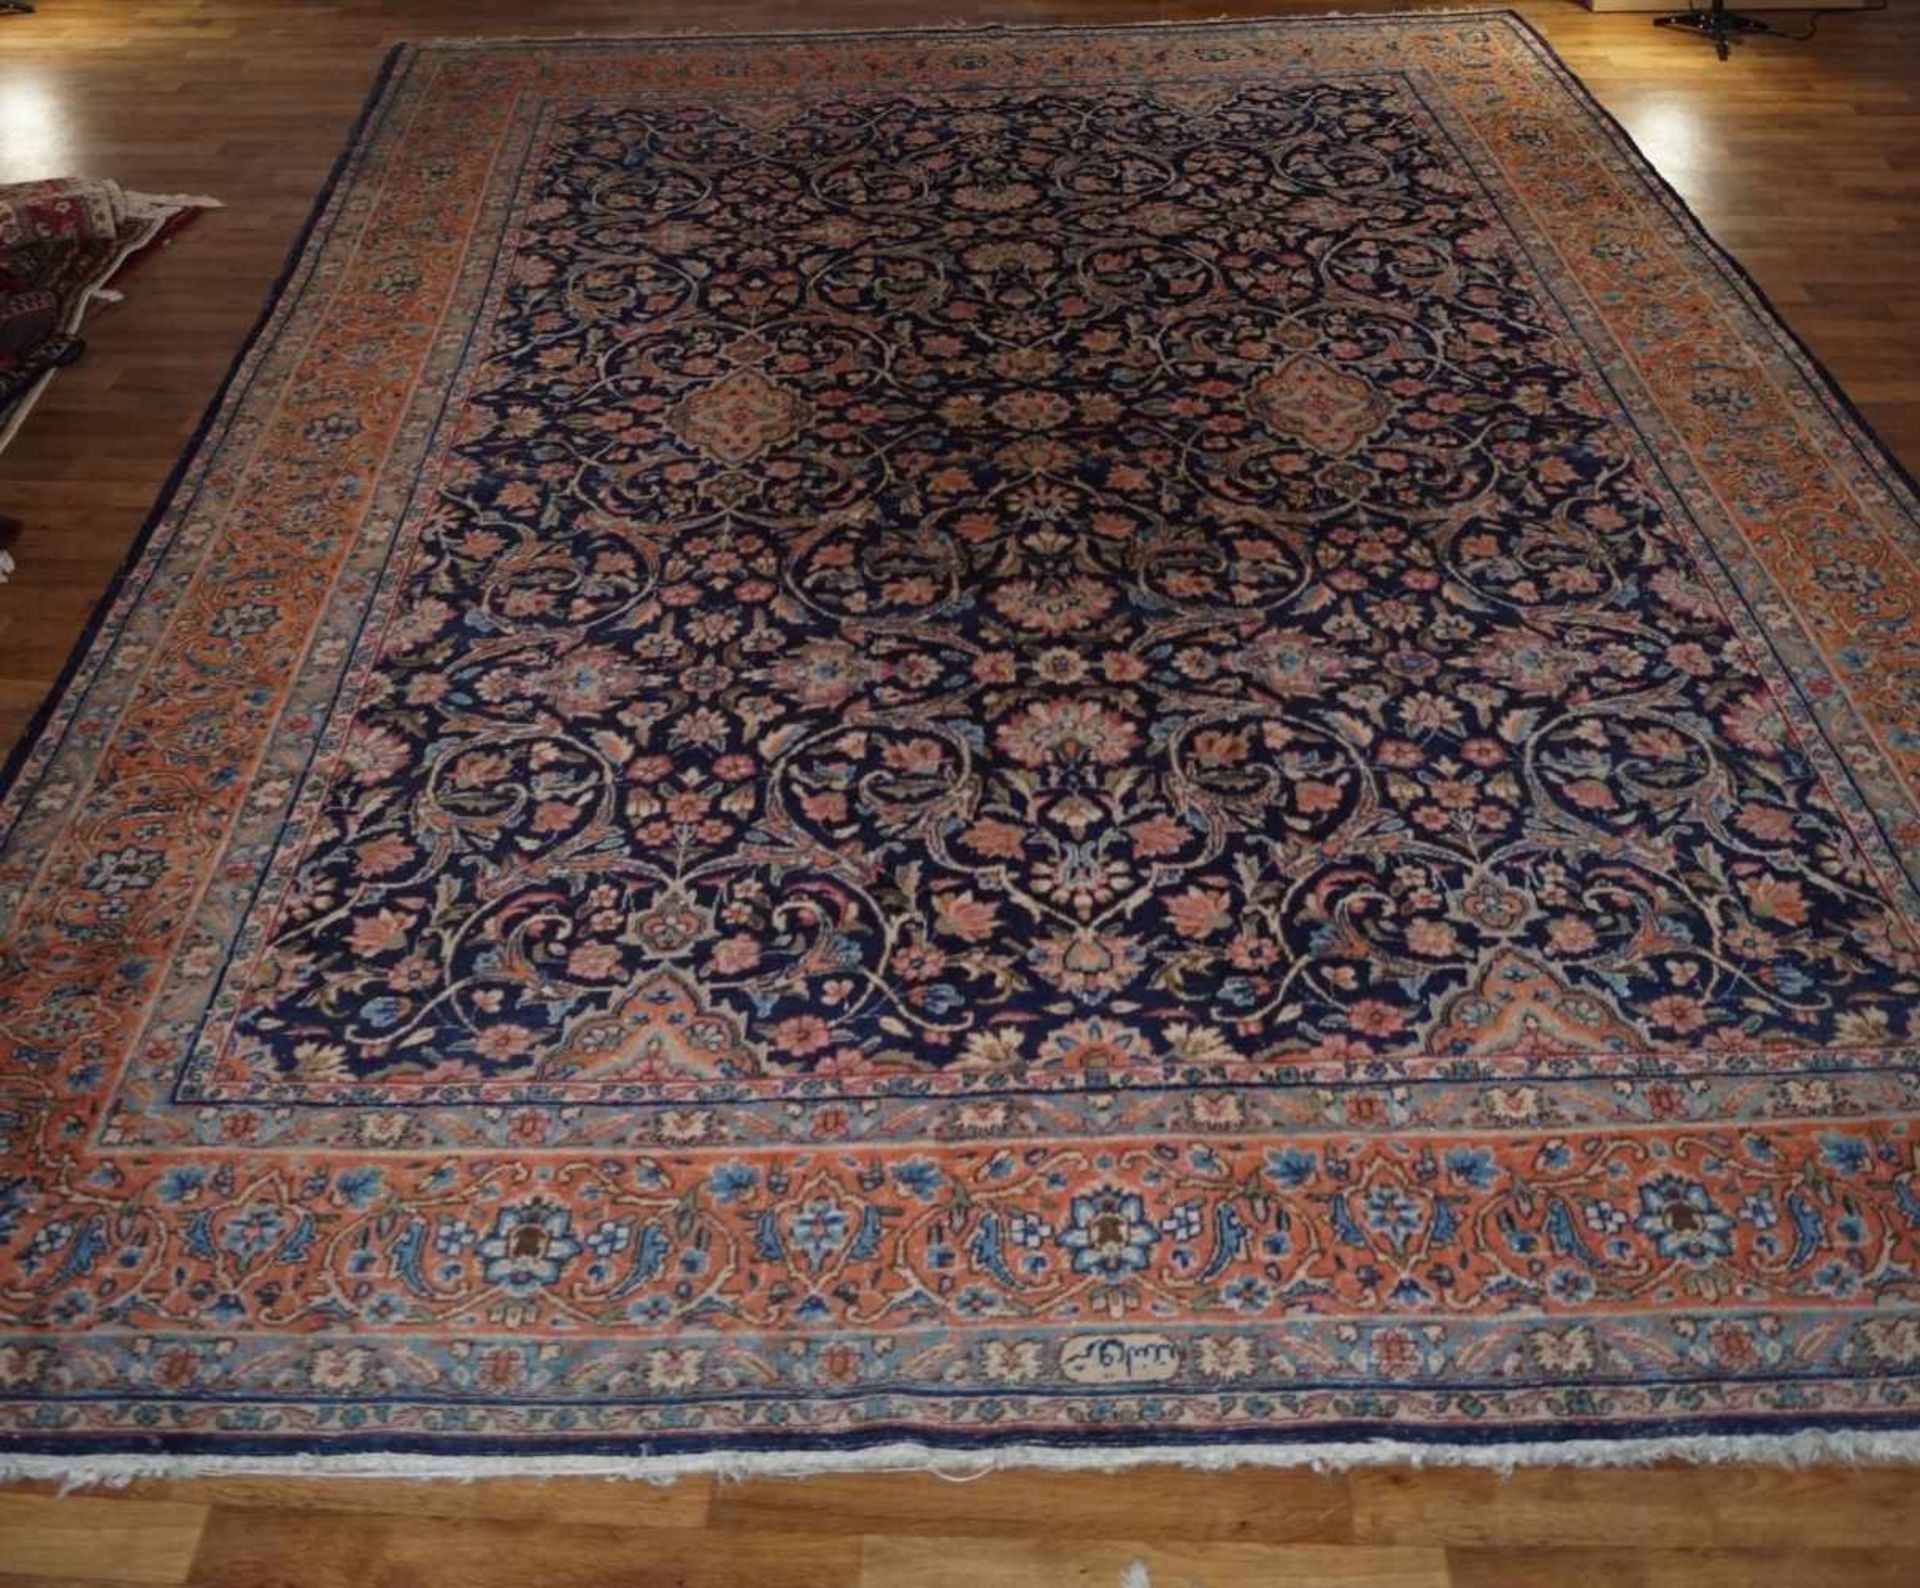 Teppich Keschan, 2,53 x 3,63 m, leicht aufgehellt an manchen Stellen und mit Gebrauchsspuren